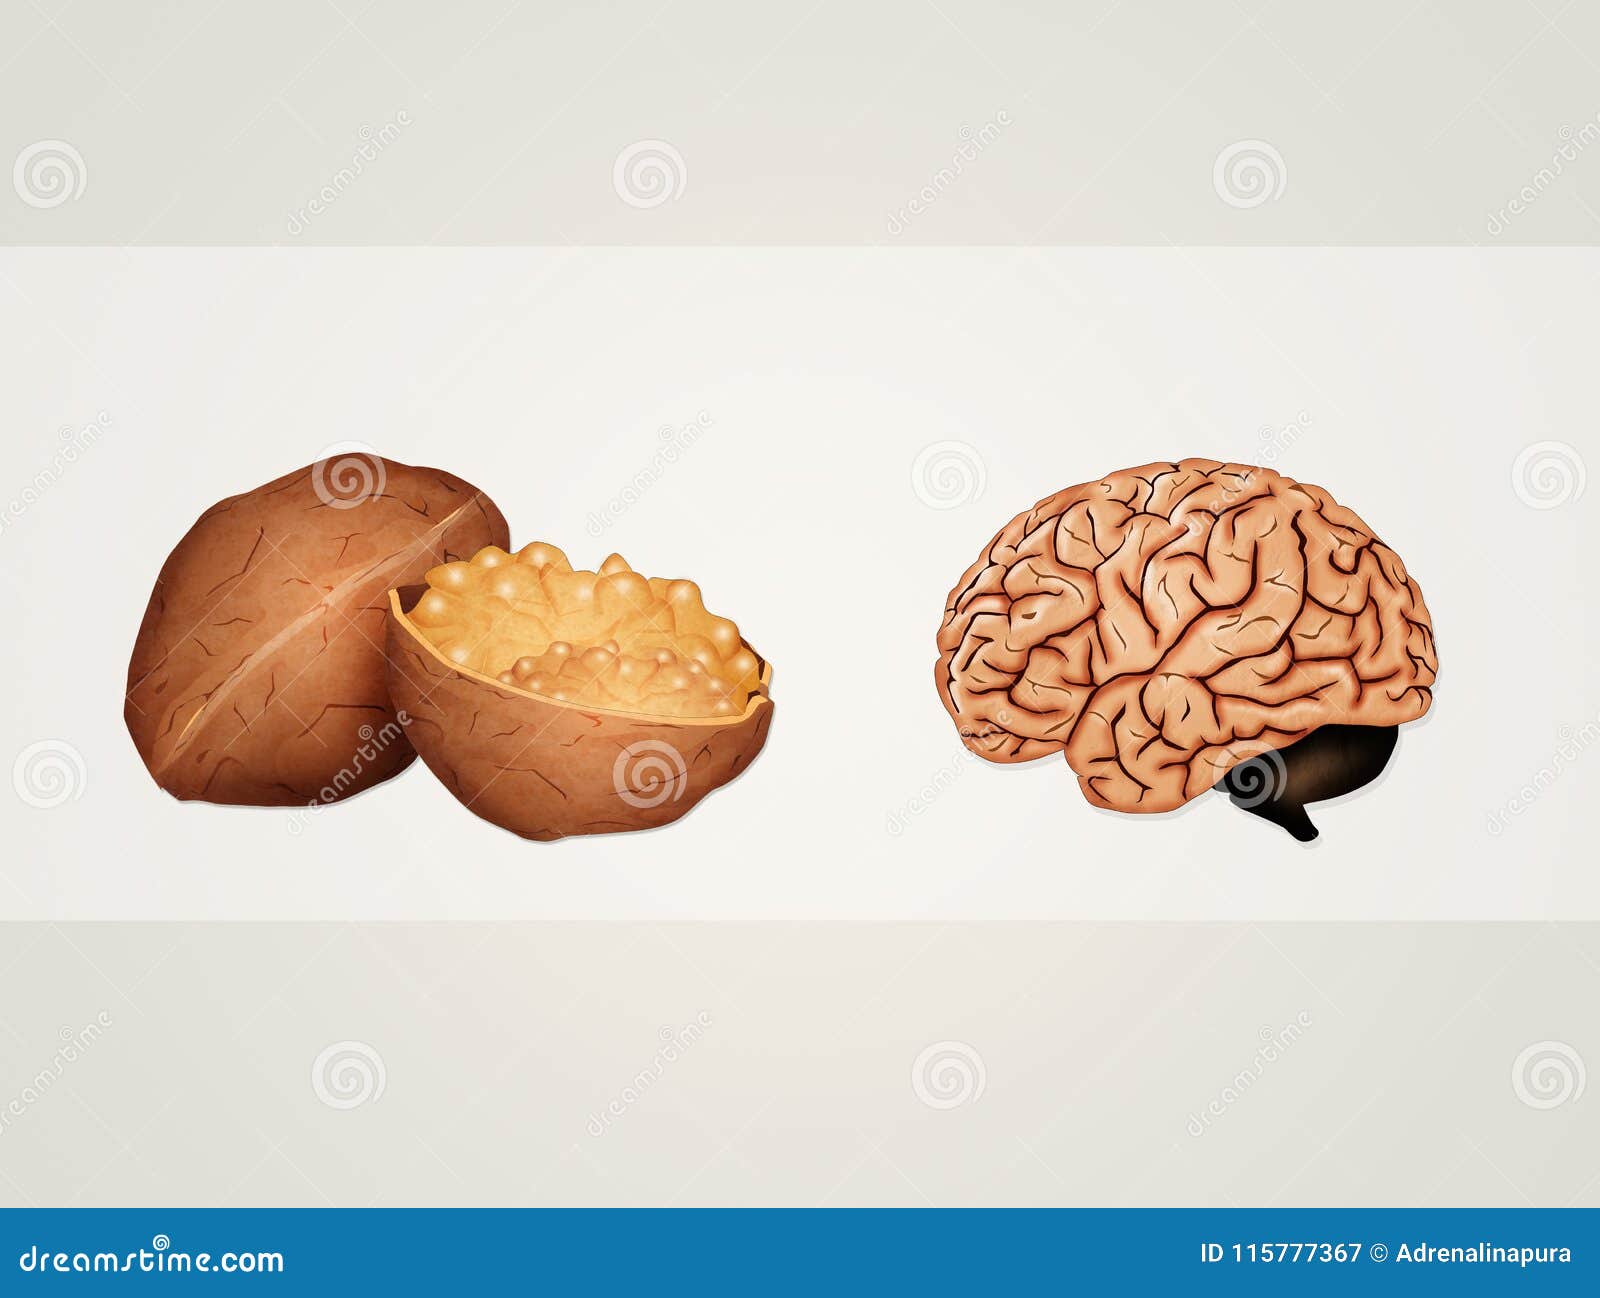 Грецкие орехи похожи на мозги. Орех похожий на мозг. Грецкий орех и мозг. Орешек вместо мозга. Грецкий орех похож на мозг.